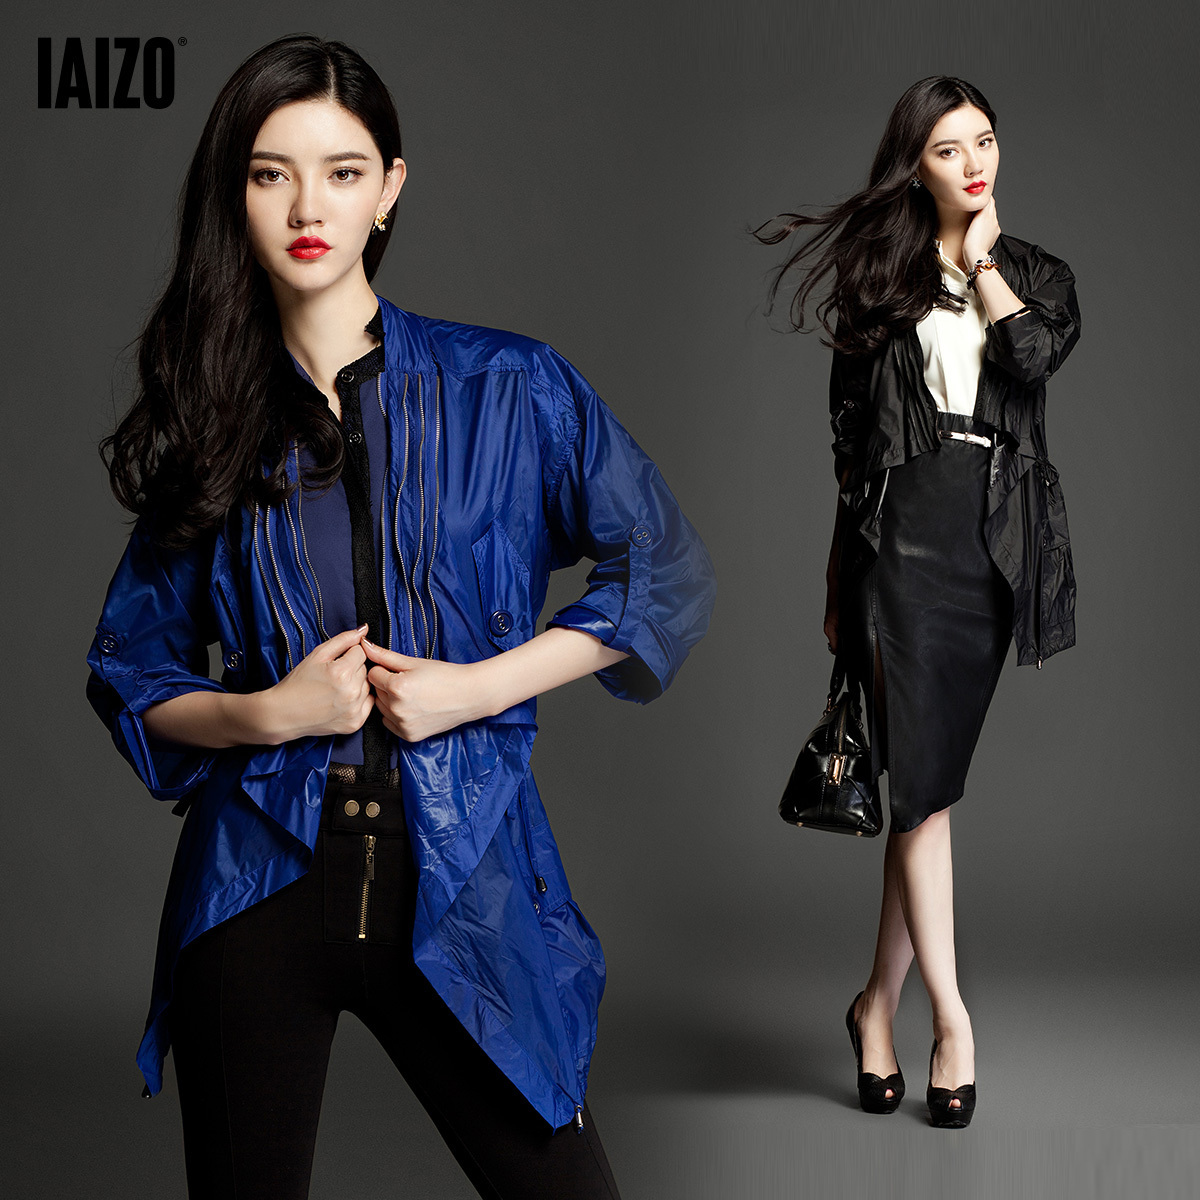 Iaizo women's slim design lacing long casual clothing outerwear 11p30010